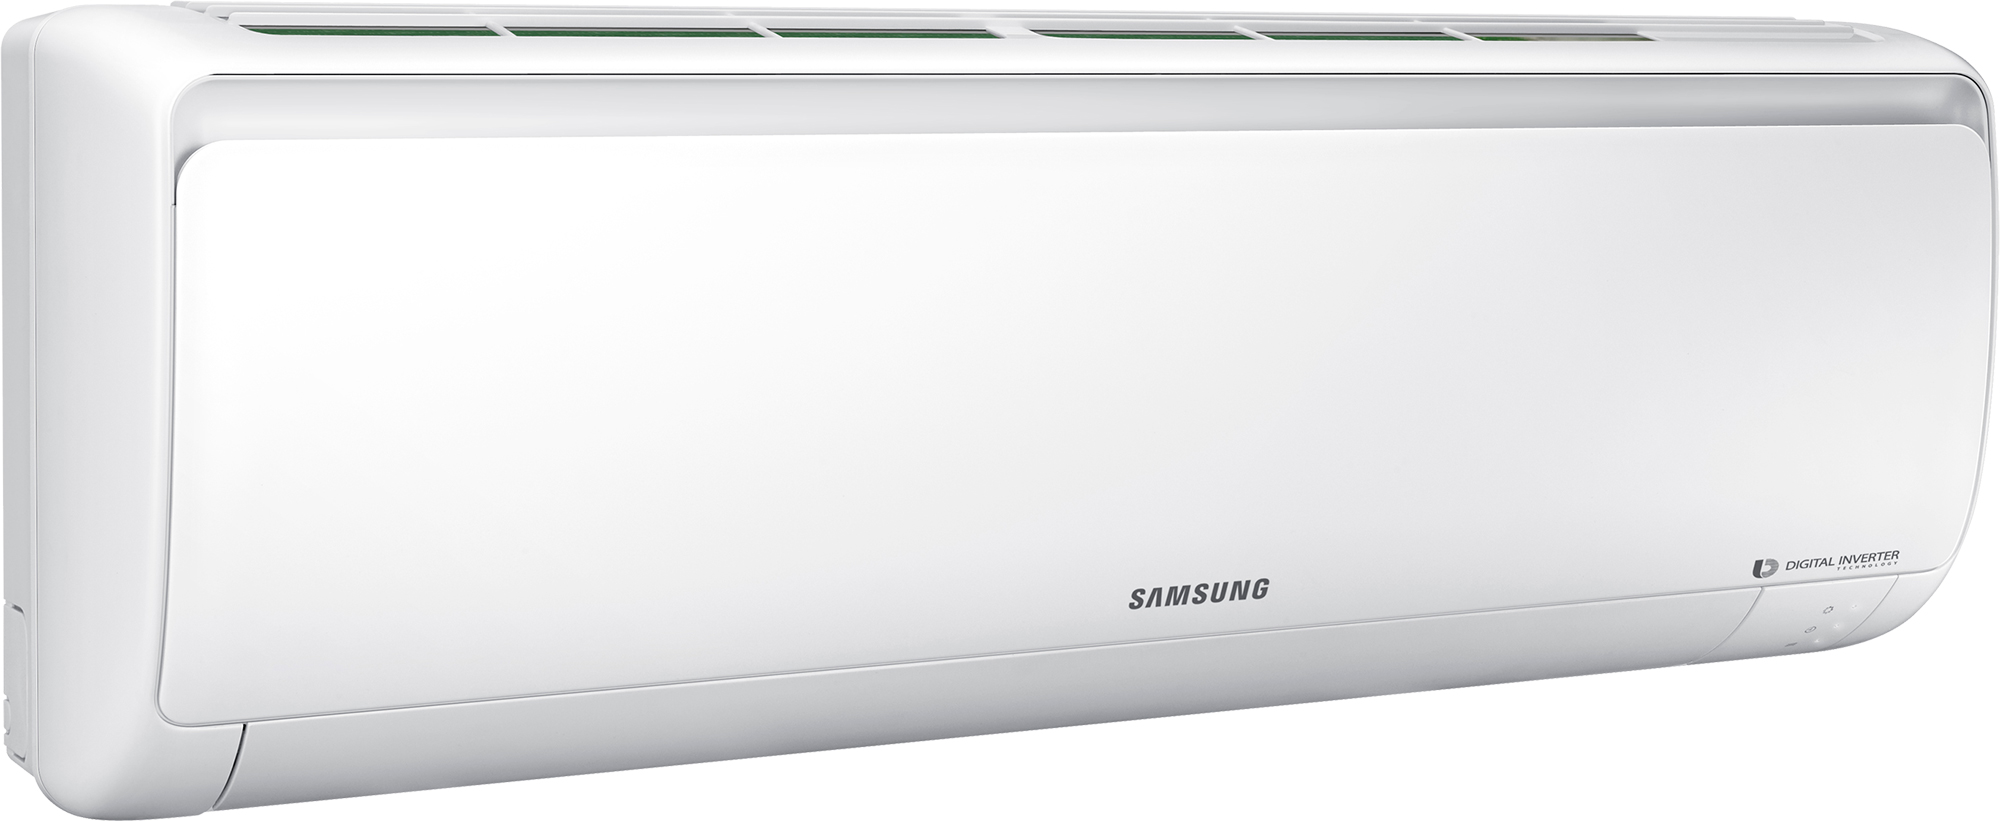 Кондиціонер спліт-система Samsung AR09RSFPAWQNER / AR09RSFPAWQXER відгуки - зображення 5